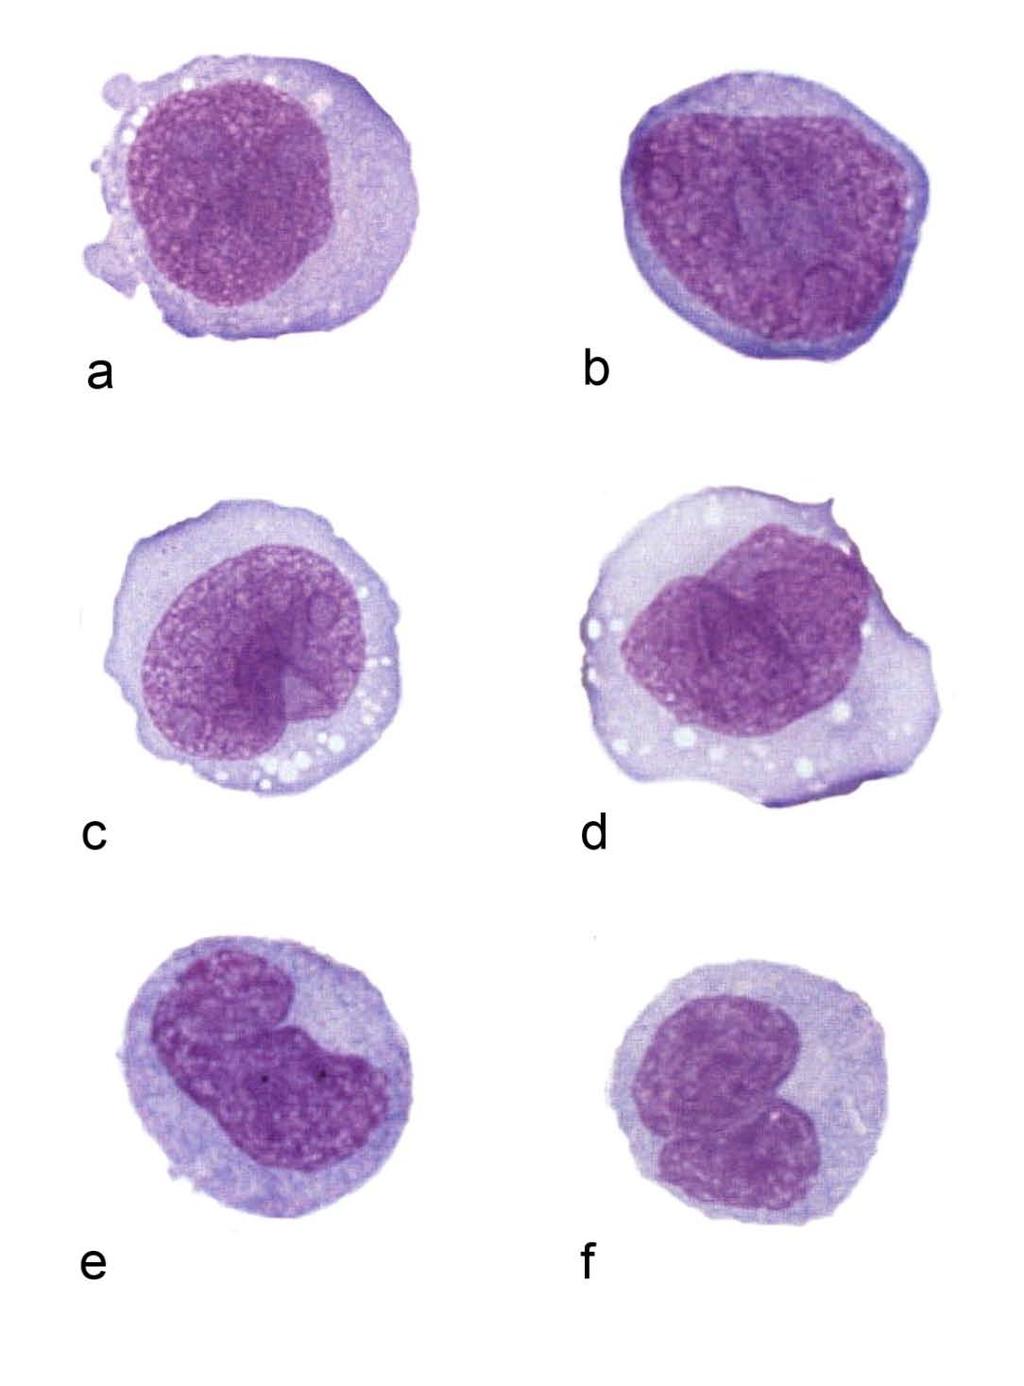 Monoblasts Promonocytes Monoblasts Large cells with abundant cytoplasm minimally vacuolated round nuclei with fine chromatin and nucleoli Promonocytes Irregular or folded nuclei, small indistinct